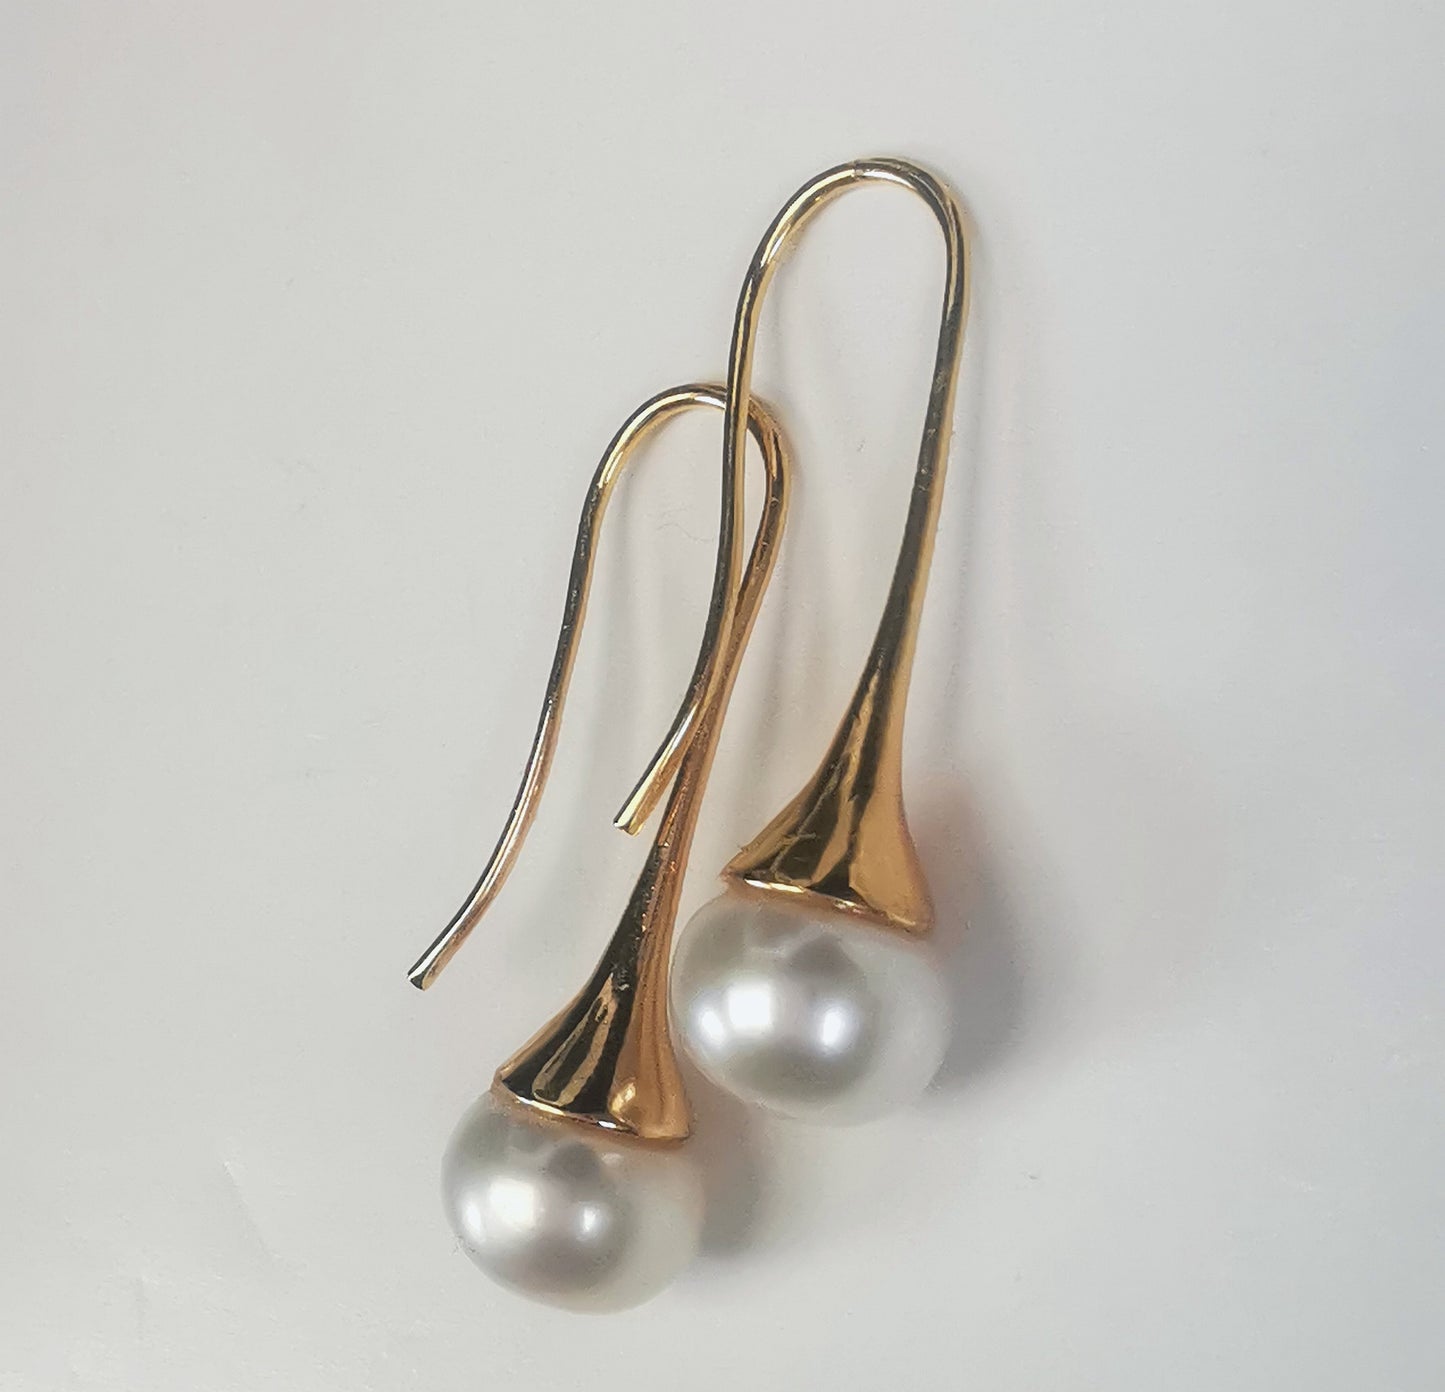 Boucles d'oreilles perles de culture blanches 9mm sur pendants longs plaqués or. Présentées cote o cote, perles en bas, pendants tournés vers la gauche, boucle droite décalée vers le haut, sur fond blanc. Vue de la droite.